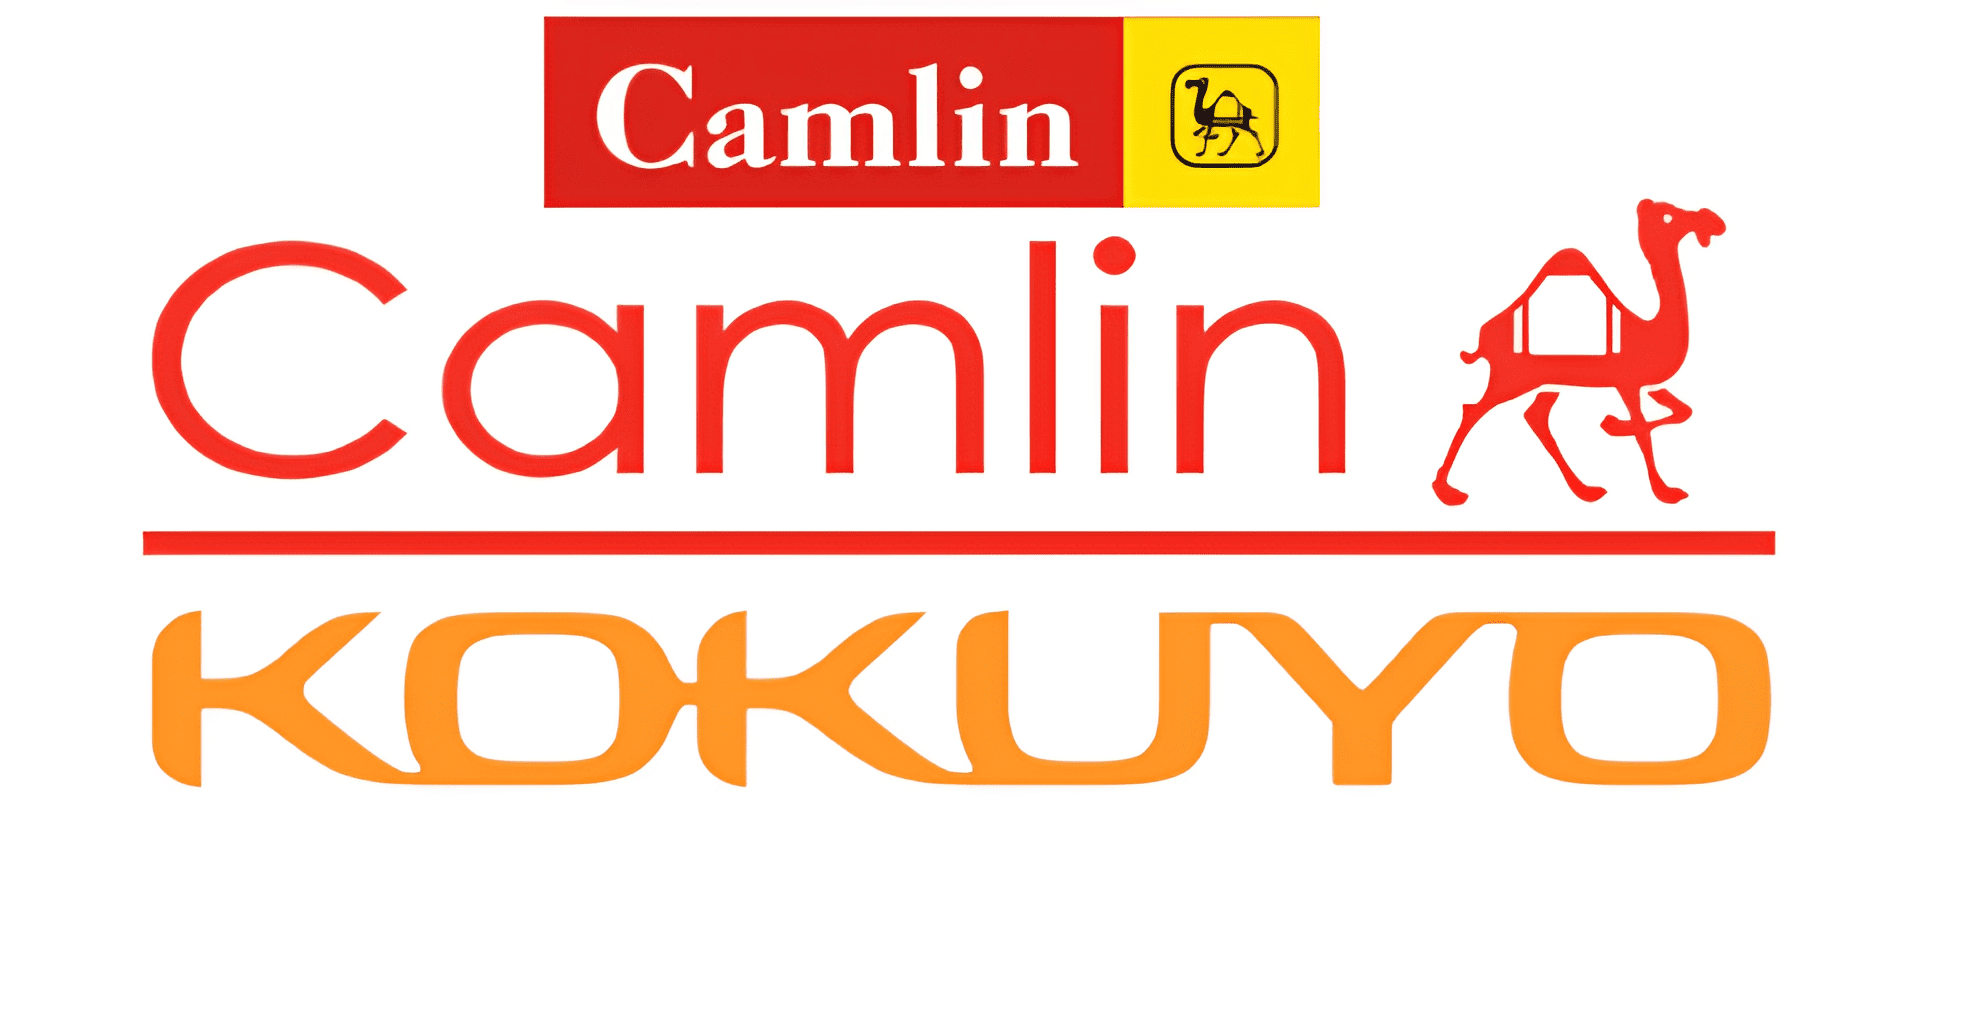 Kokuyo Camlin logo in transparent PNG format